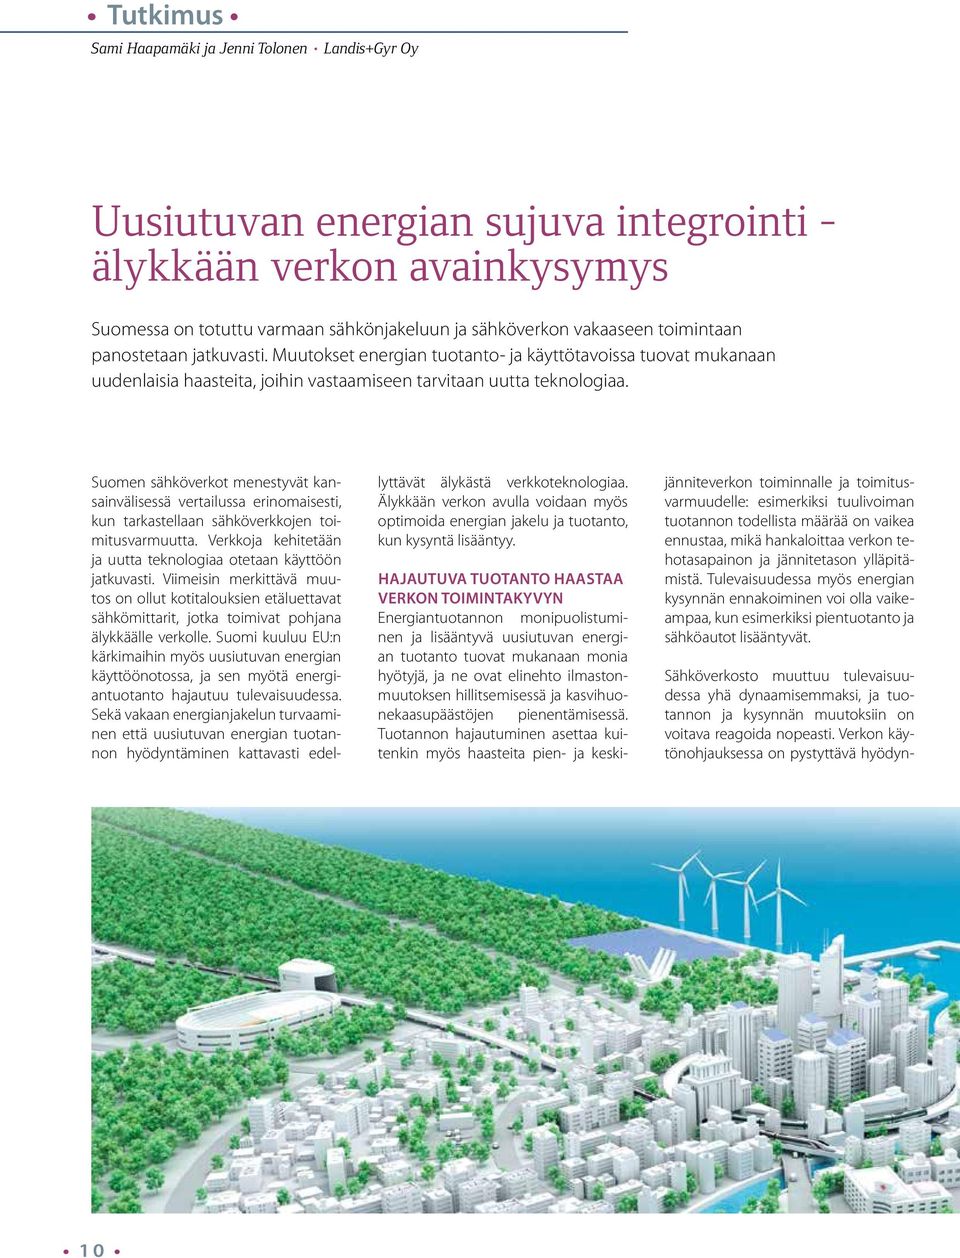 Suomen sähköverkot menestyvät kansainvälisessä vertailussa erinomaisesti, kun tarkastellaan sähköverkkojen toimitusvarmuutta. Verkkoja kehitetään ja uutta teknologiaa otetaan käyttöön jatkuvasti.